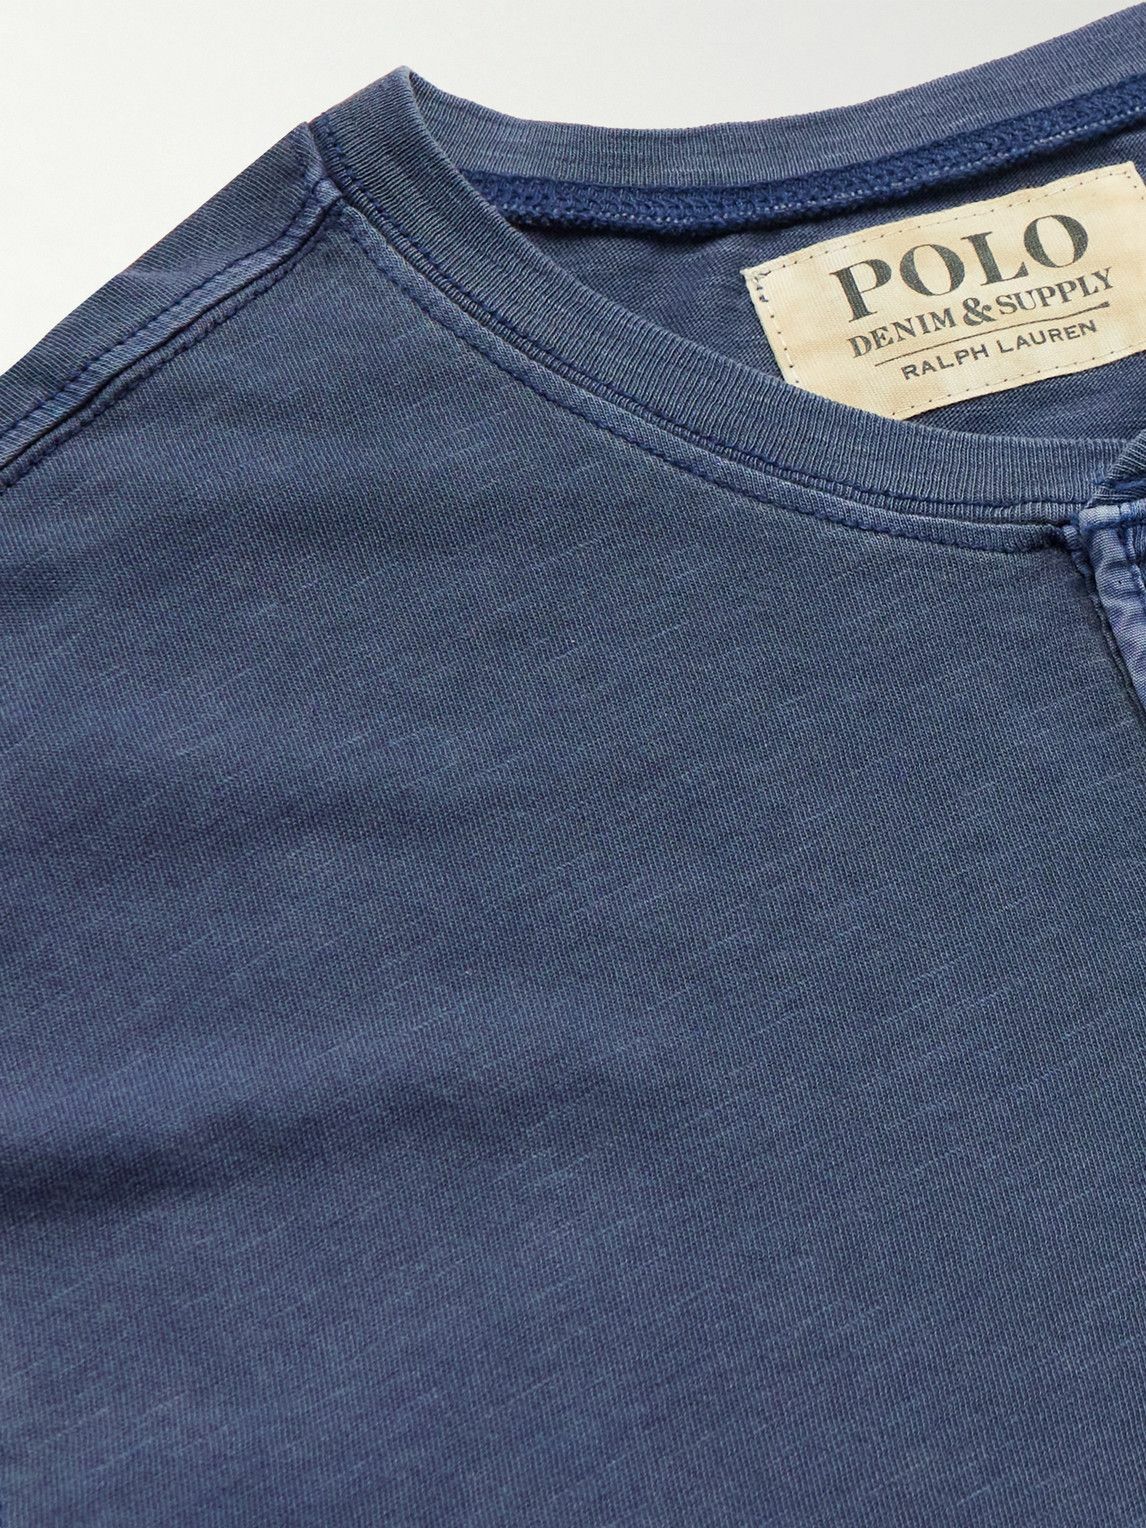 Polo Ralph Lauren - Logo-Embroidered Cotton-Jersey Henley T-Shirt - Blue